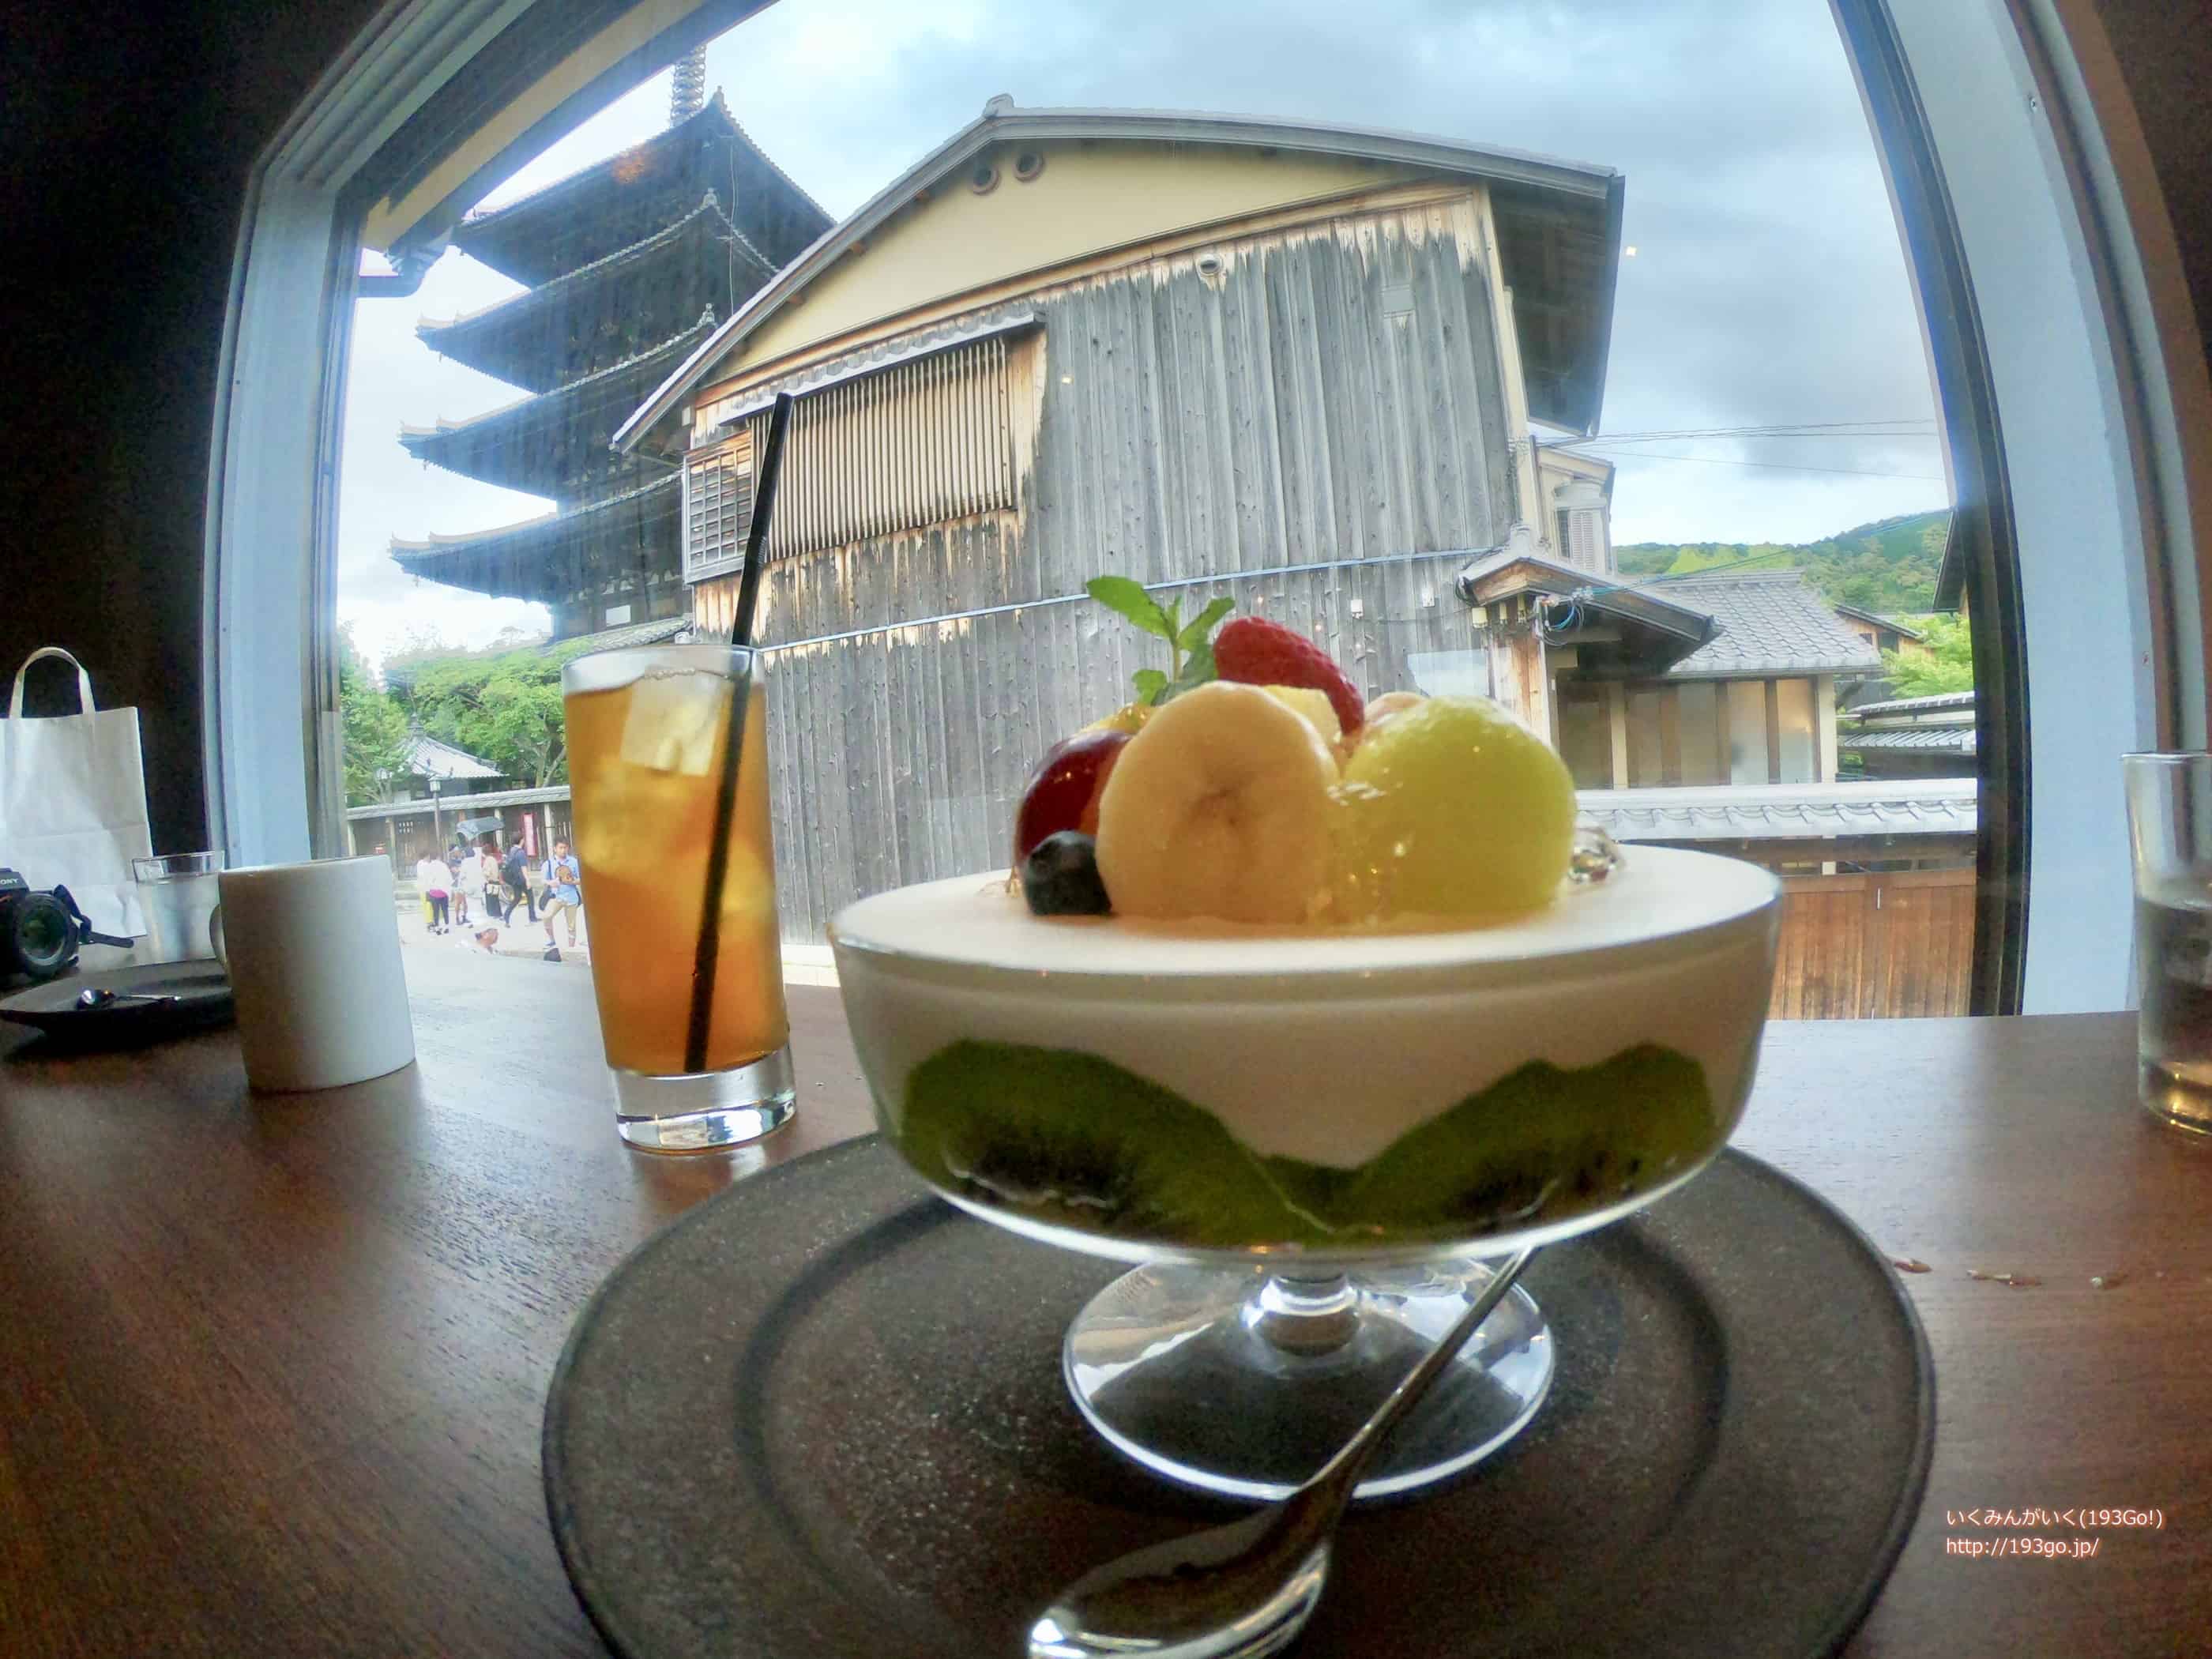 京都カフェ 「DORUMIRU(ドルミール)」でフルーツパフェを味わう!